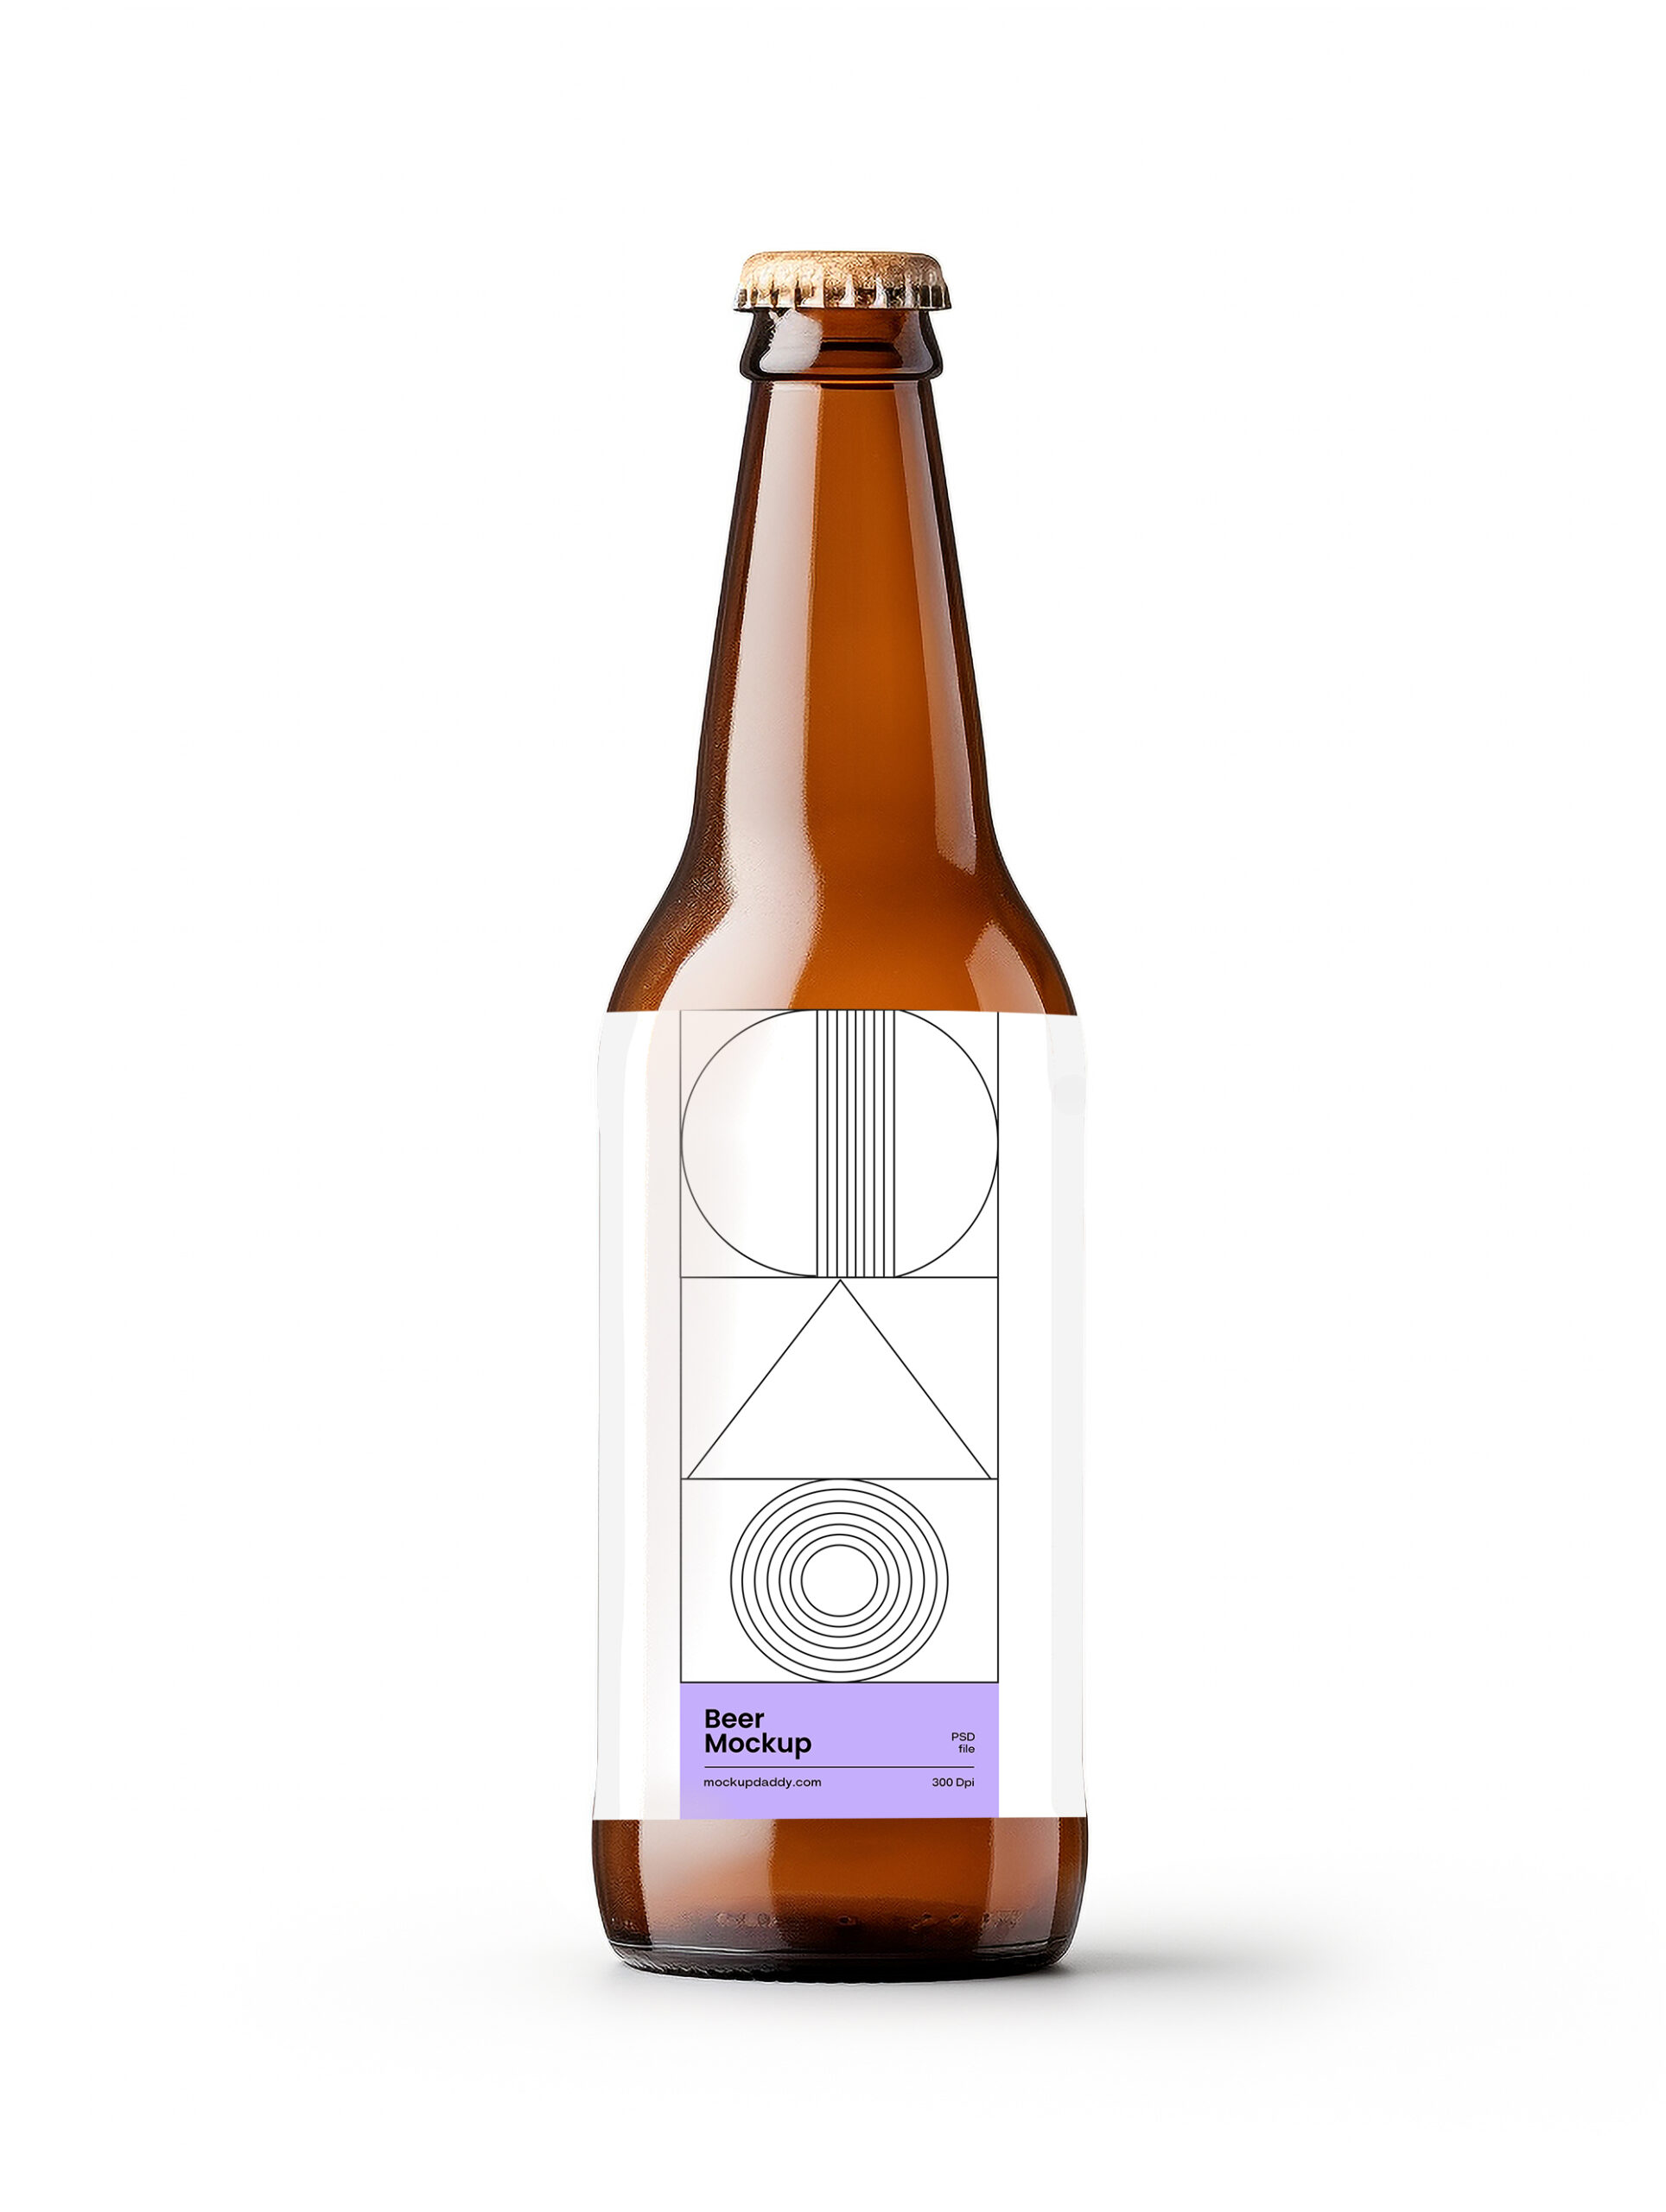 Free Download Beer bottle label mockup PSD